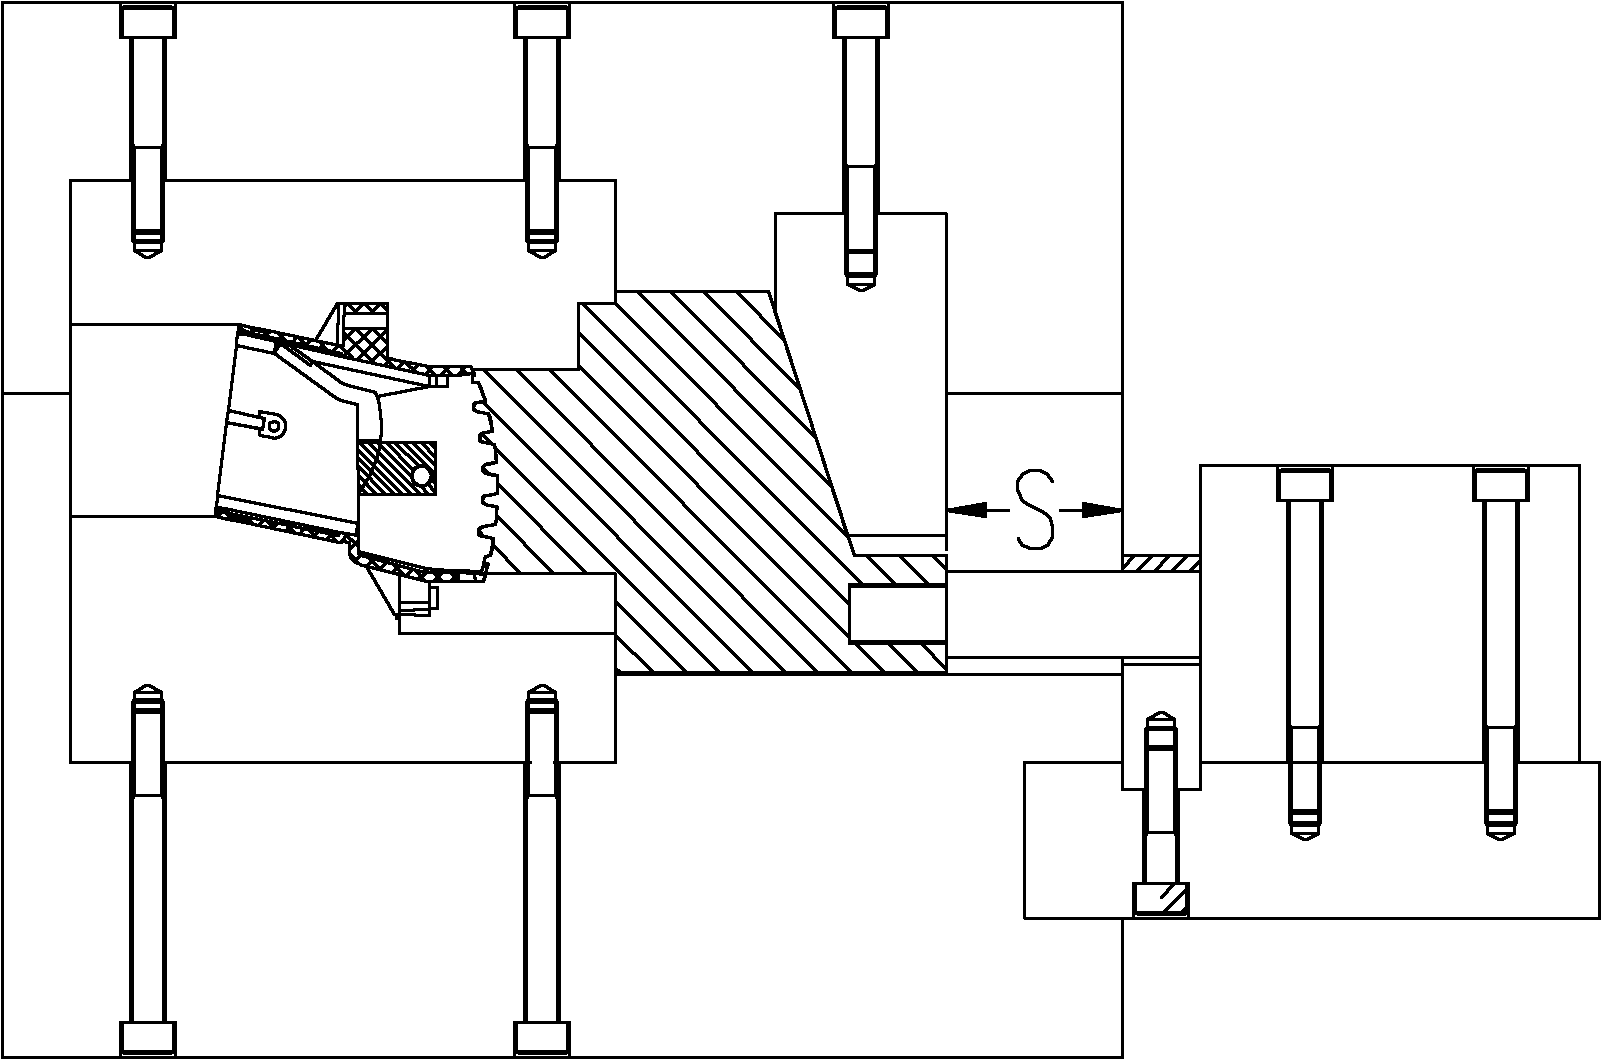 Slide block demolding mechanism with function of coring twice